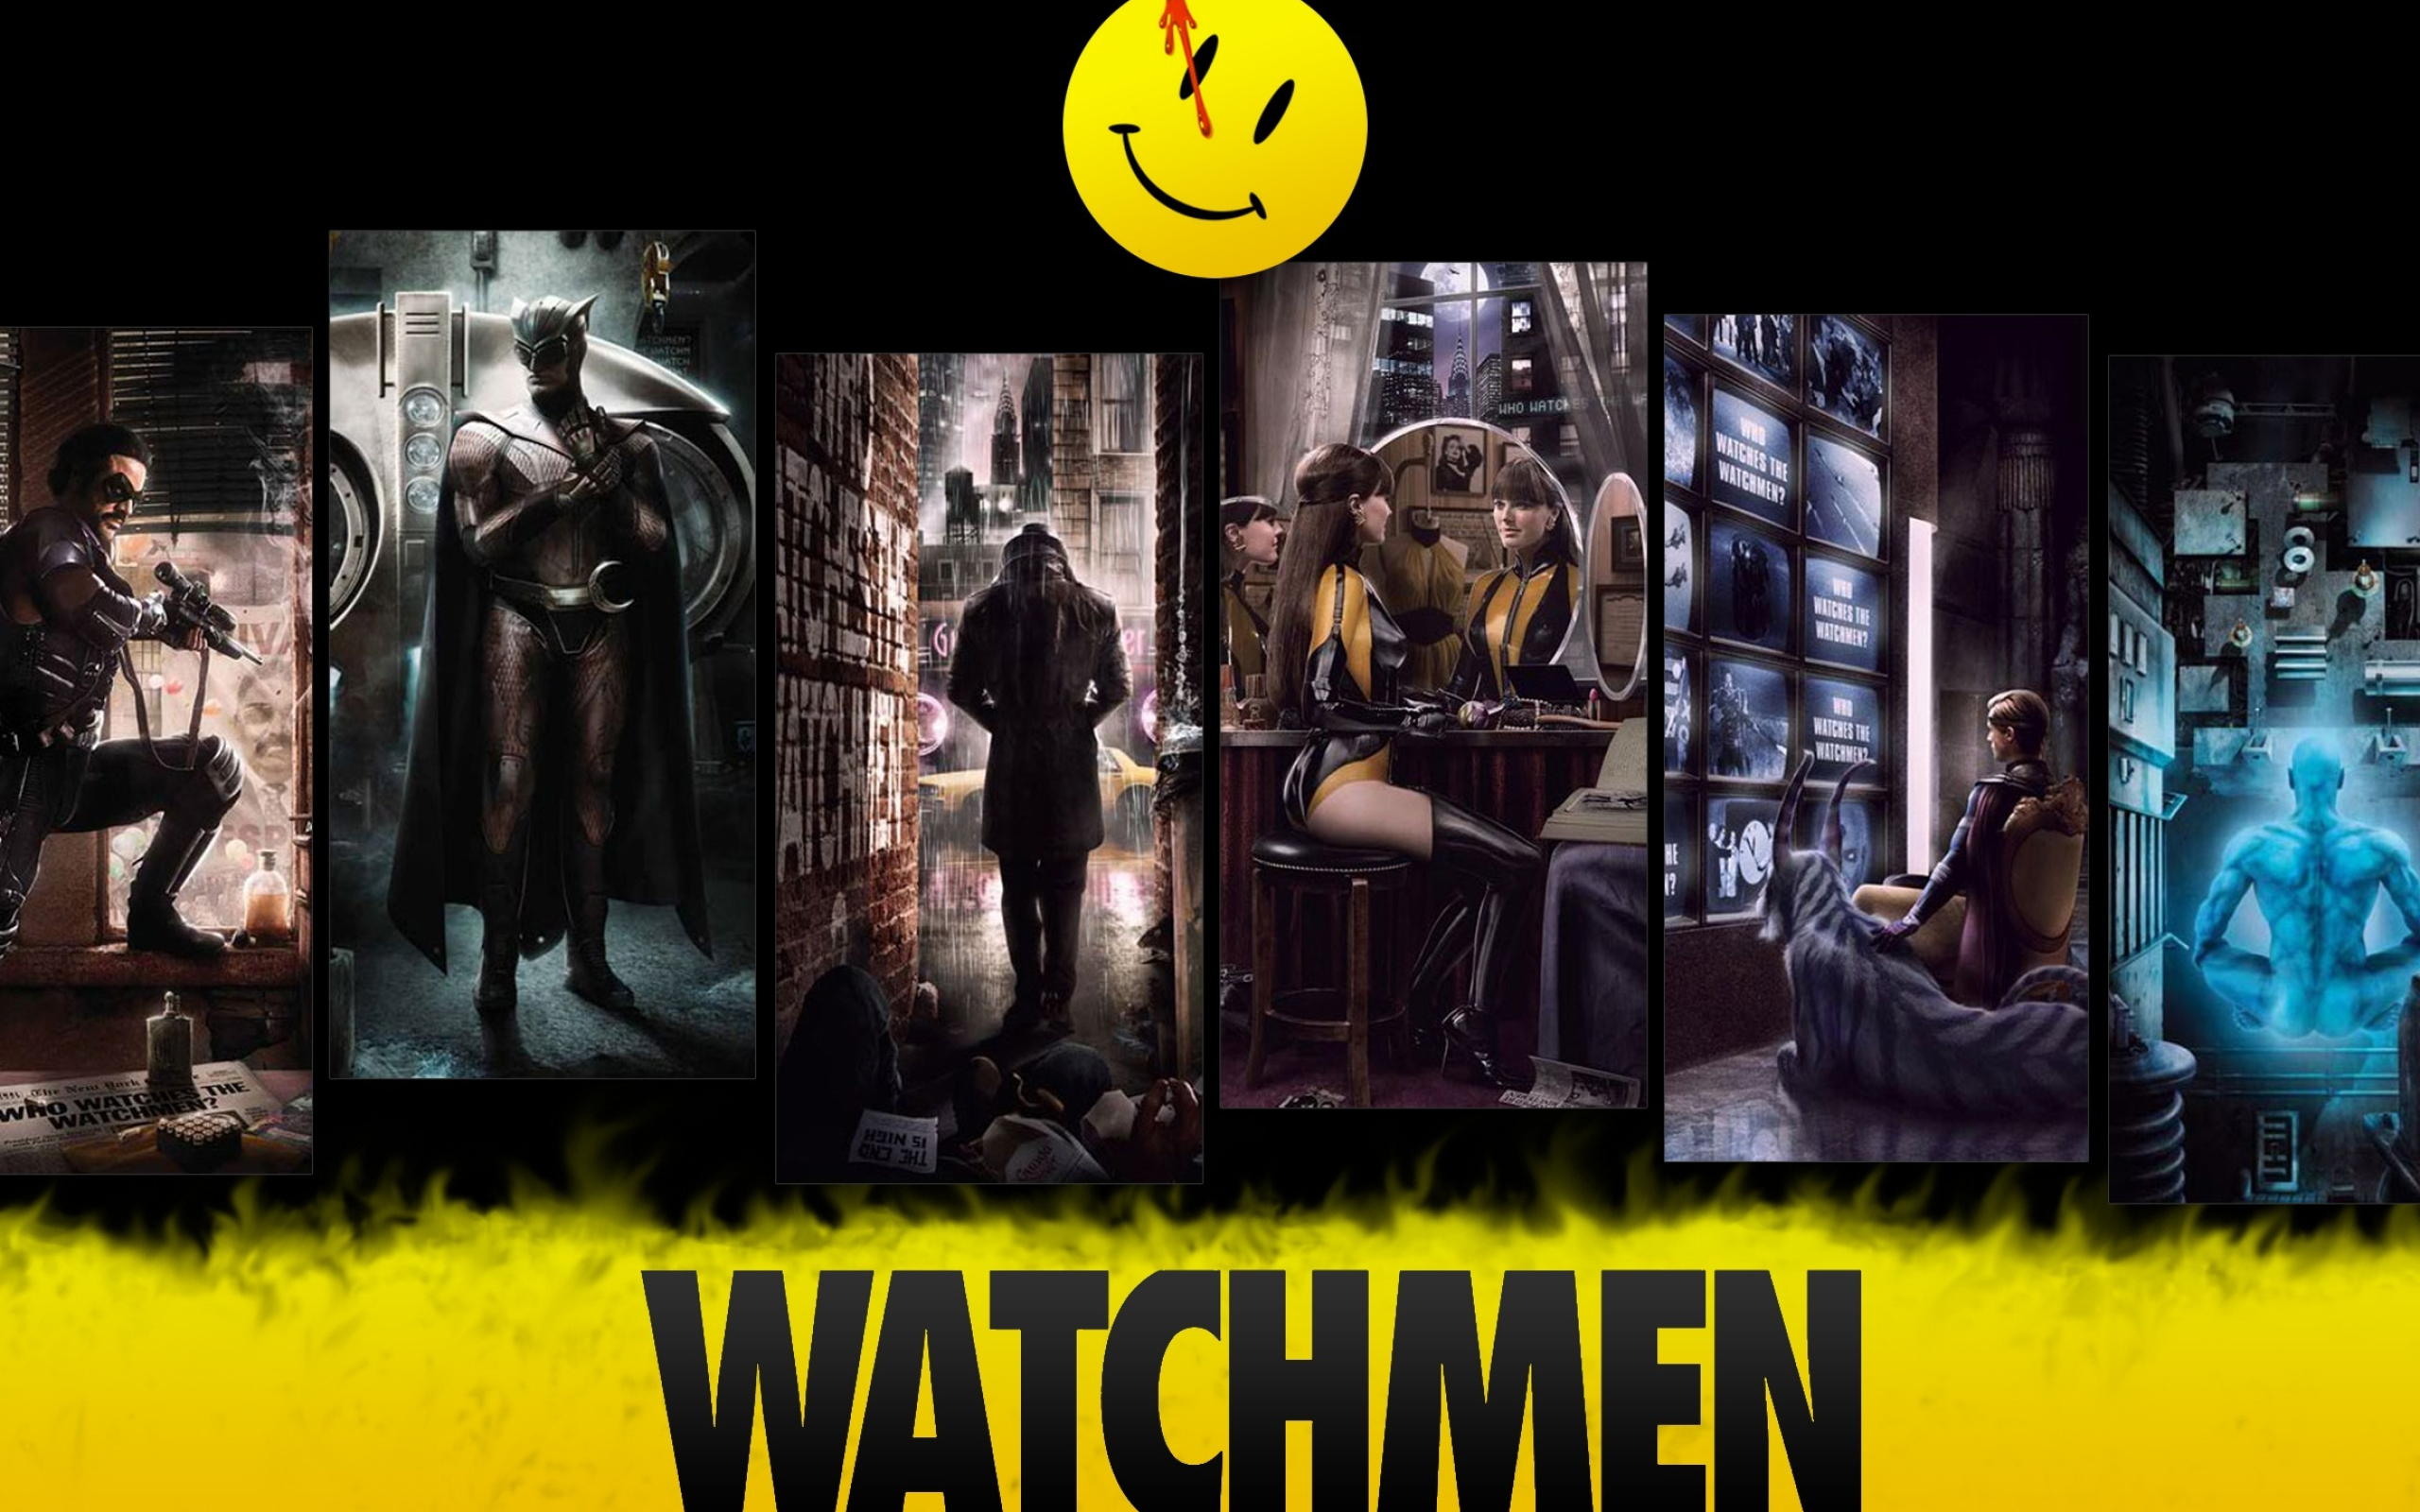 Nite Owl, Watchmen, Ultra HD, Desktop background, 2560x1600 HD Desktop